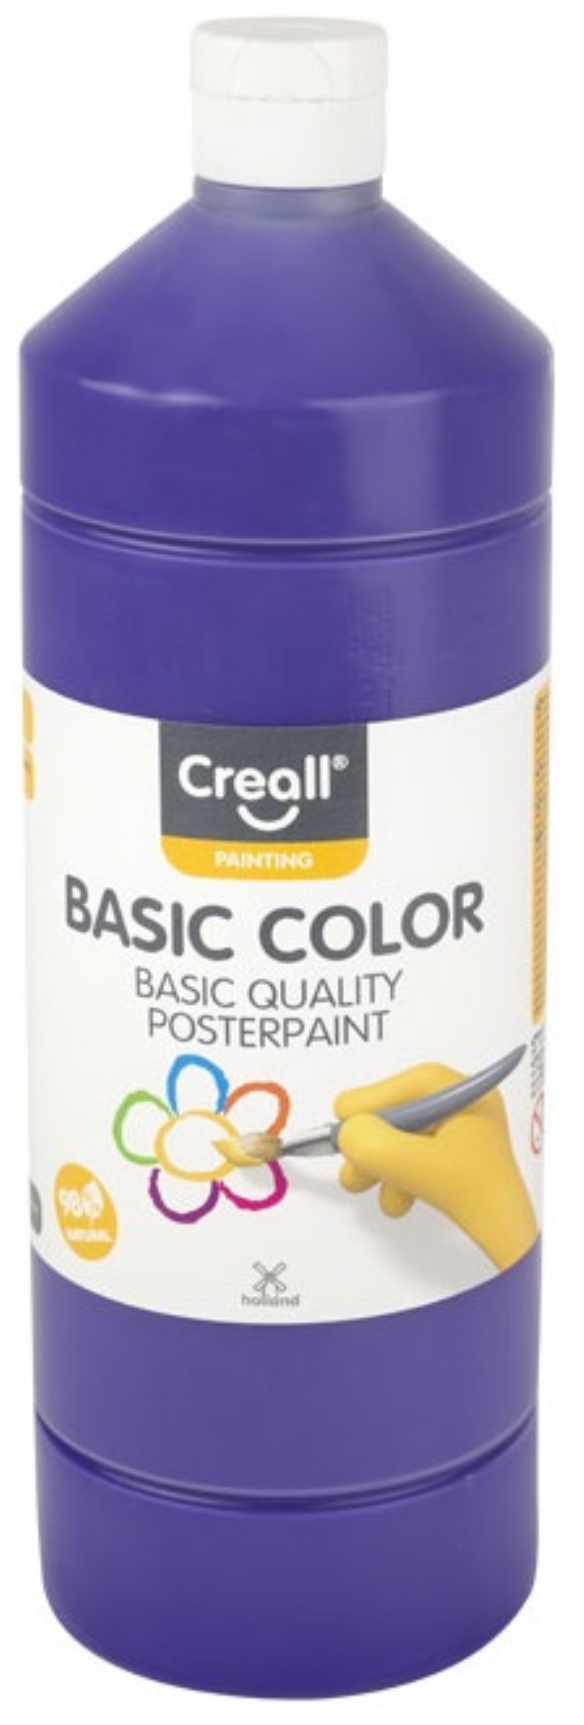 Basic-color plakkaatverf, 1000 ml, 09 paars kopen?